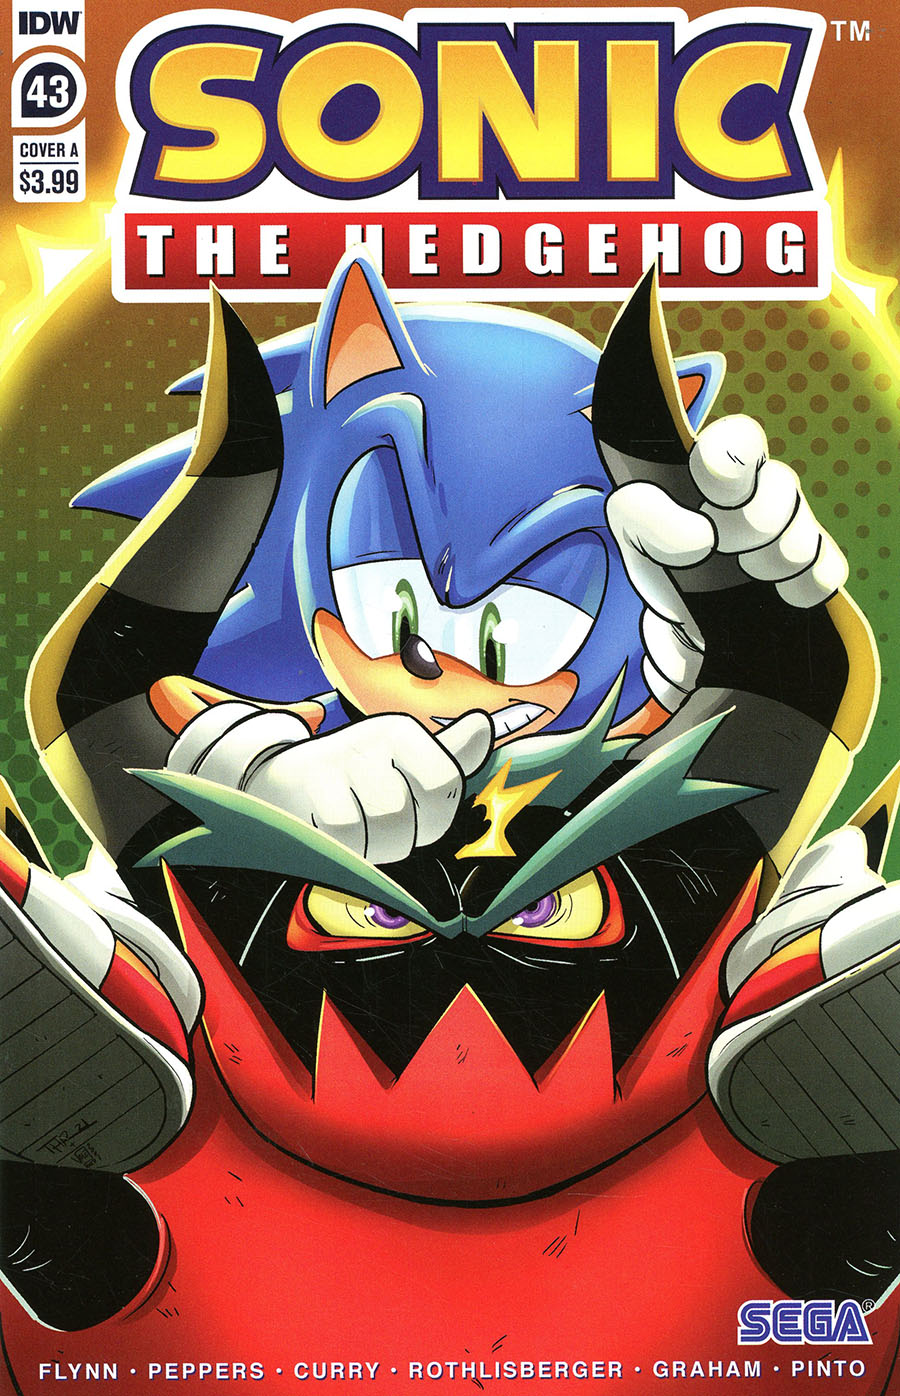 Sonic The Hedgehog Vol 3 #43 Cover A Regular Thomas Rothlisberger Cover